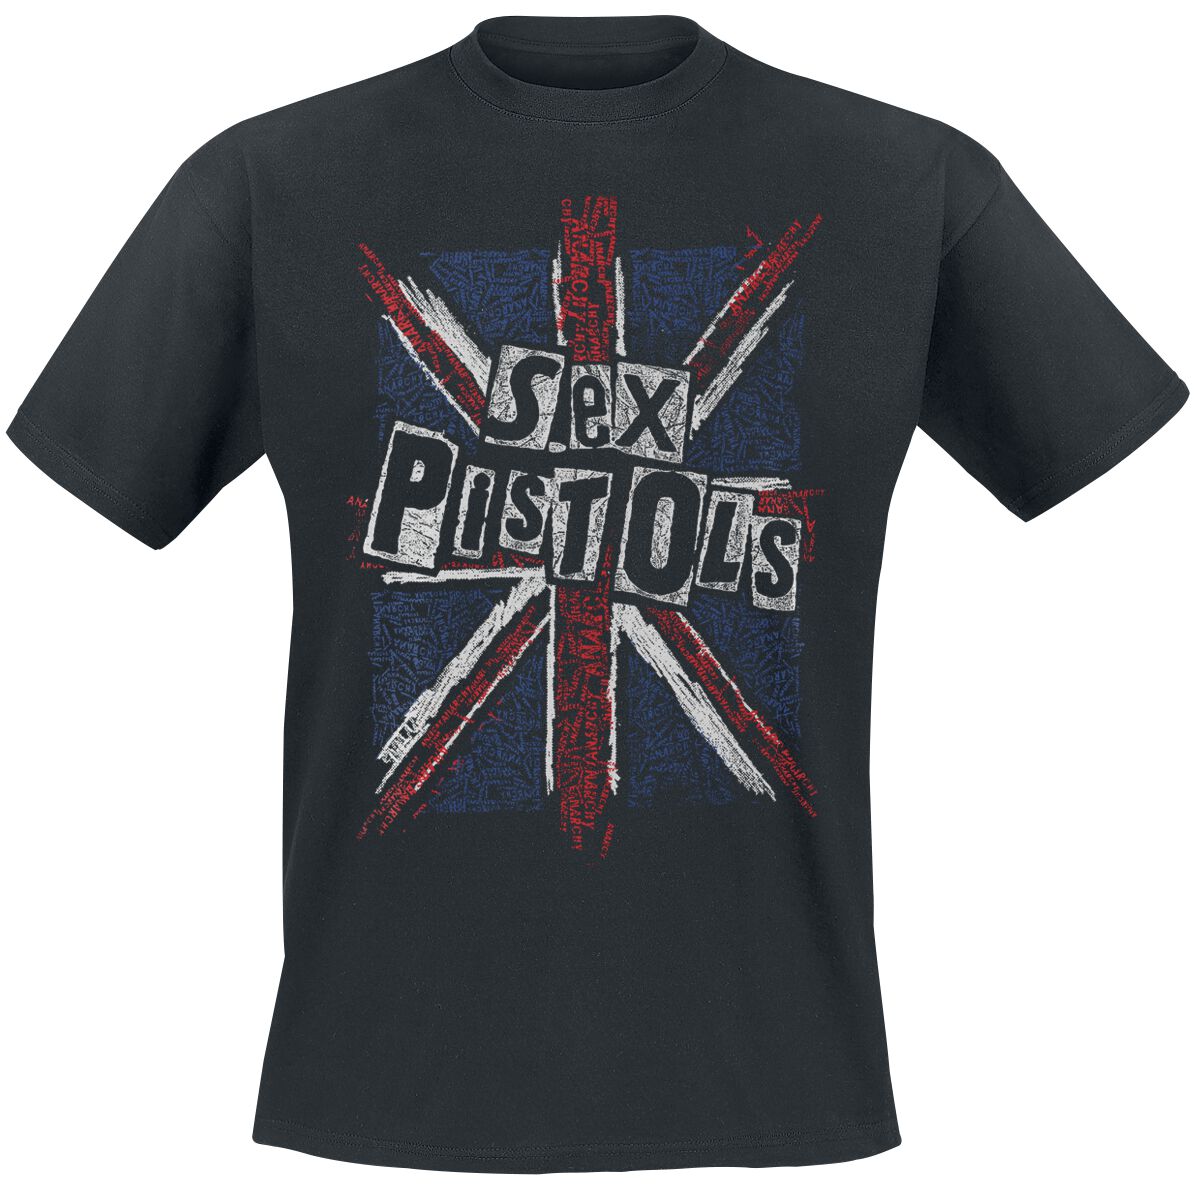 Sex Pistols T-Shirt - Union Jack - M bis XXL - für Männer - Größe L - schwarz  - Lizenziertes Merchandise!